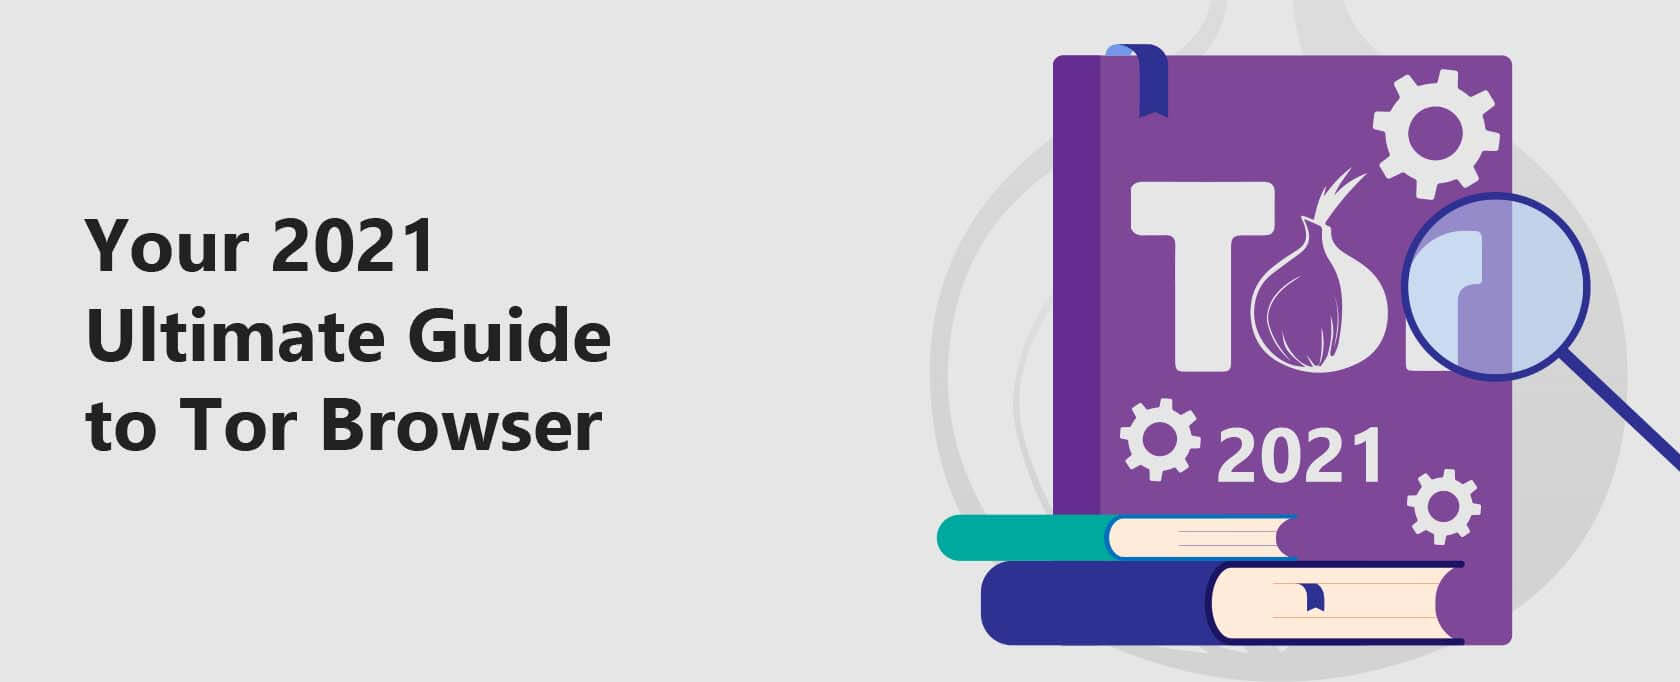 Tor browser guide тор браузер скачать на андроид с официального сайта русском бесплатно